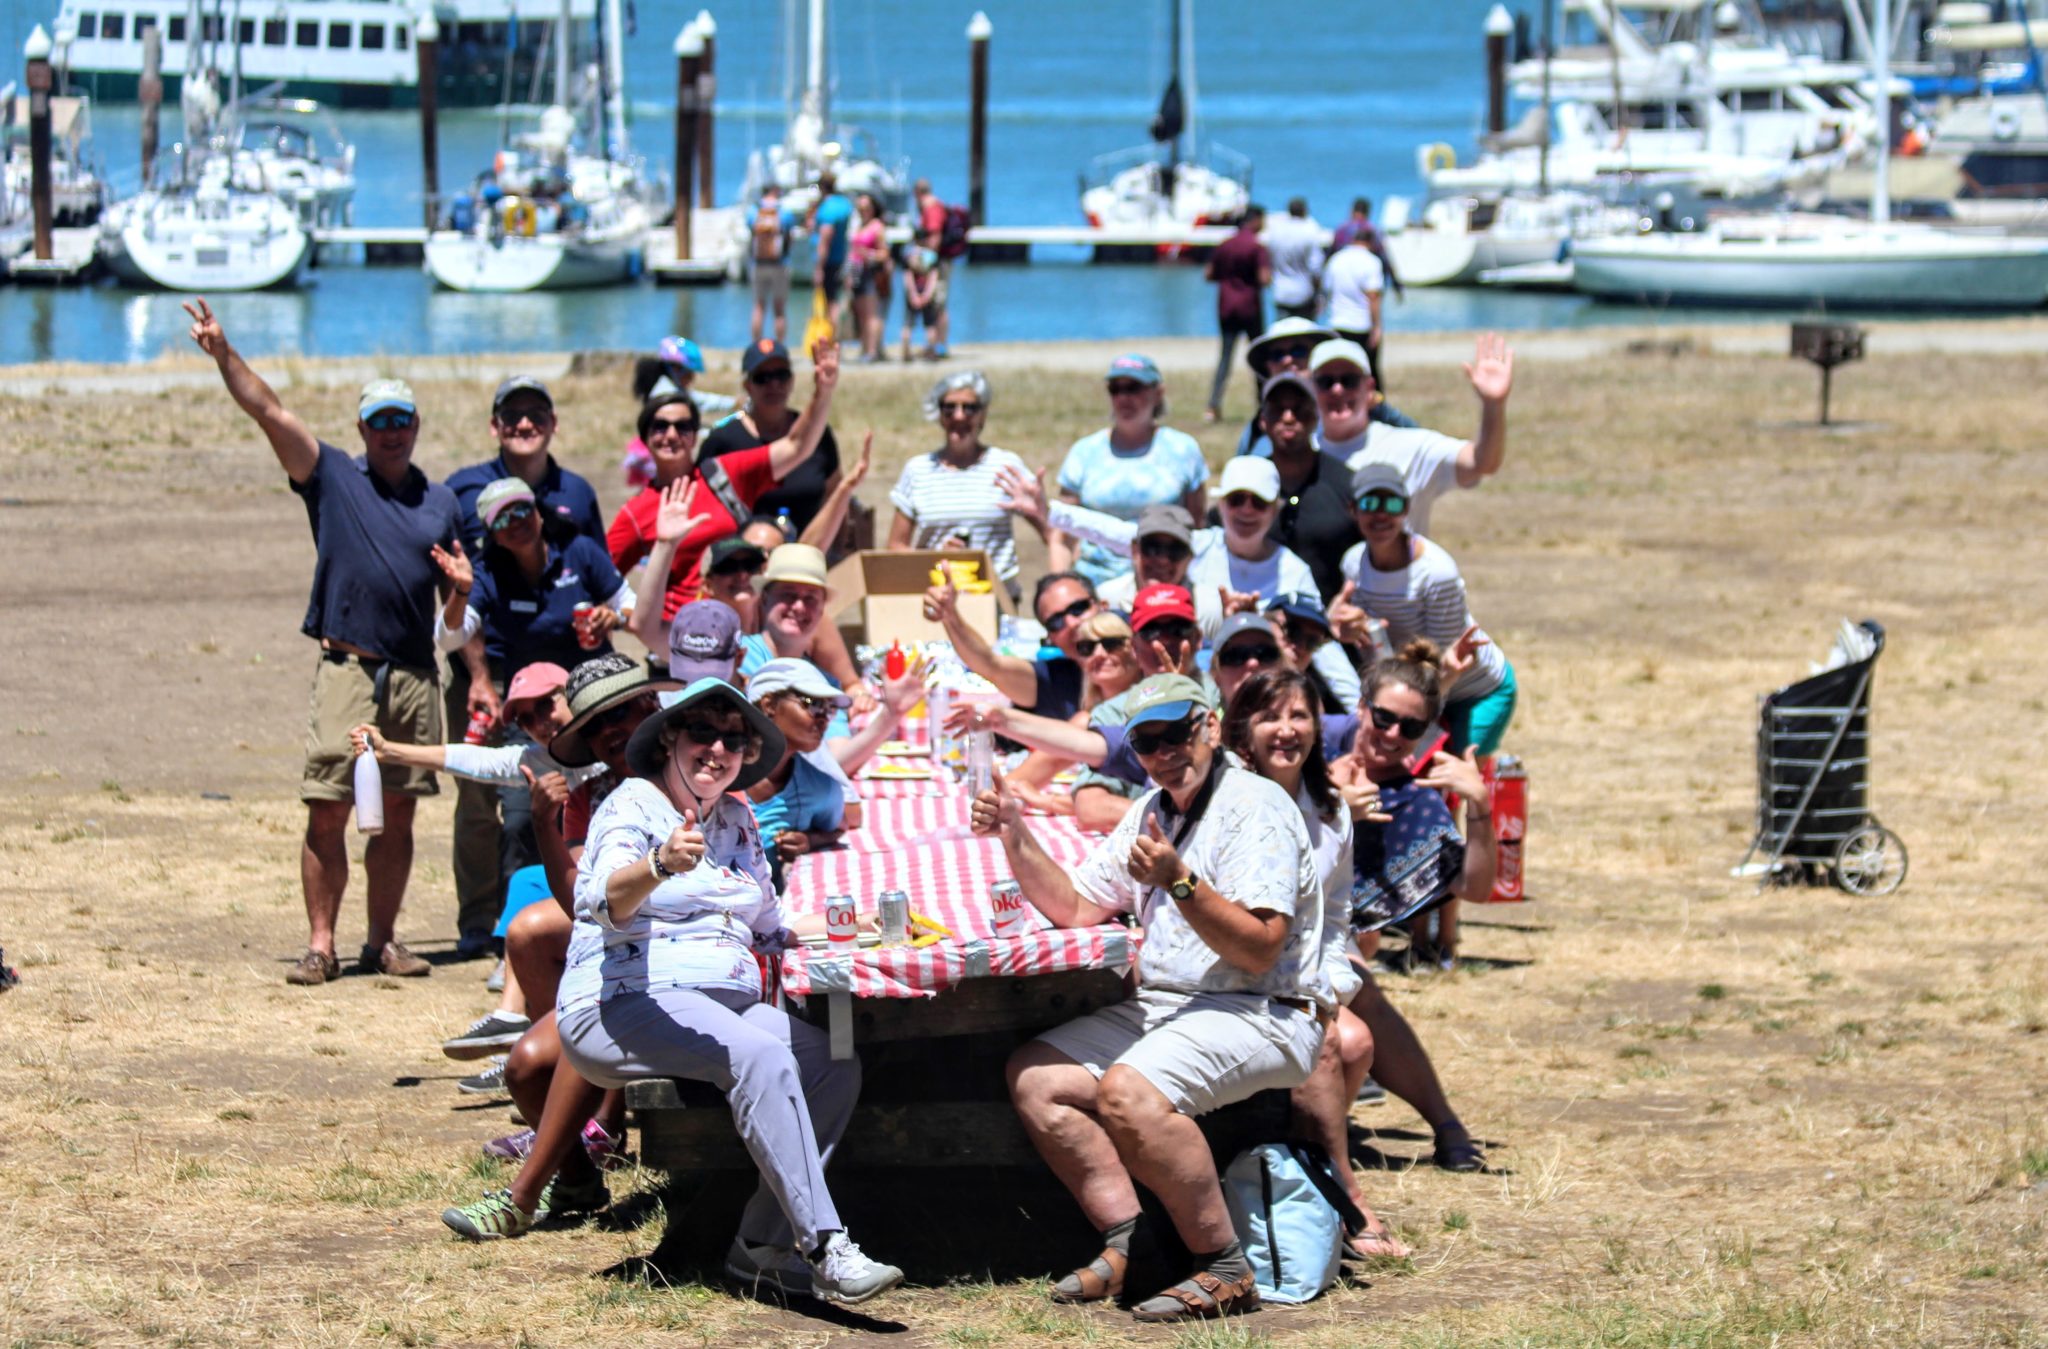 Club Nautique members having a picnic at a marina